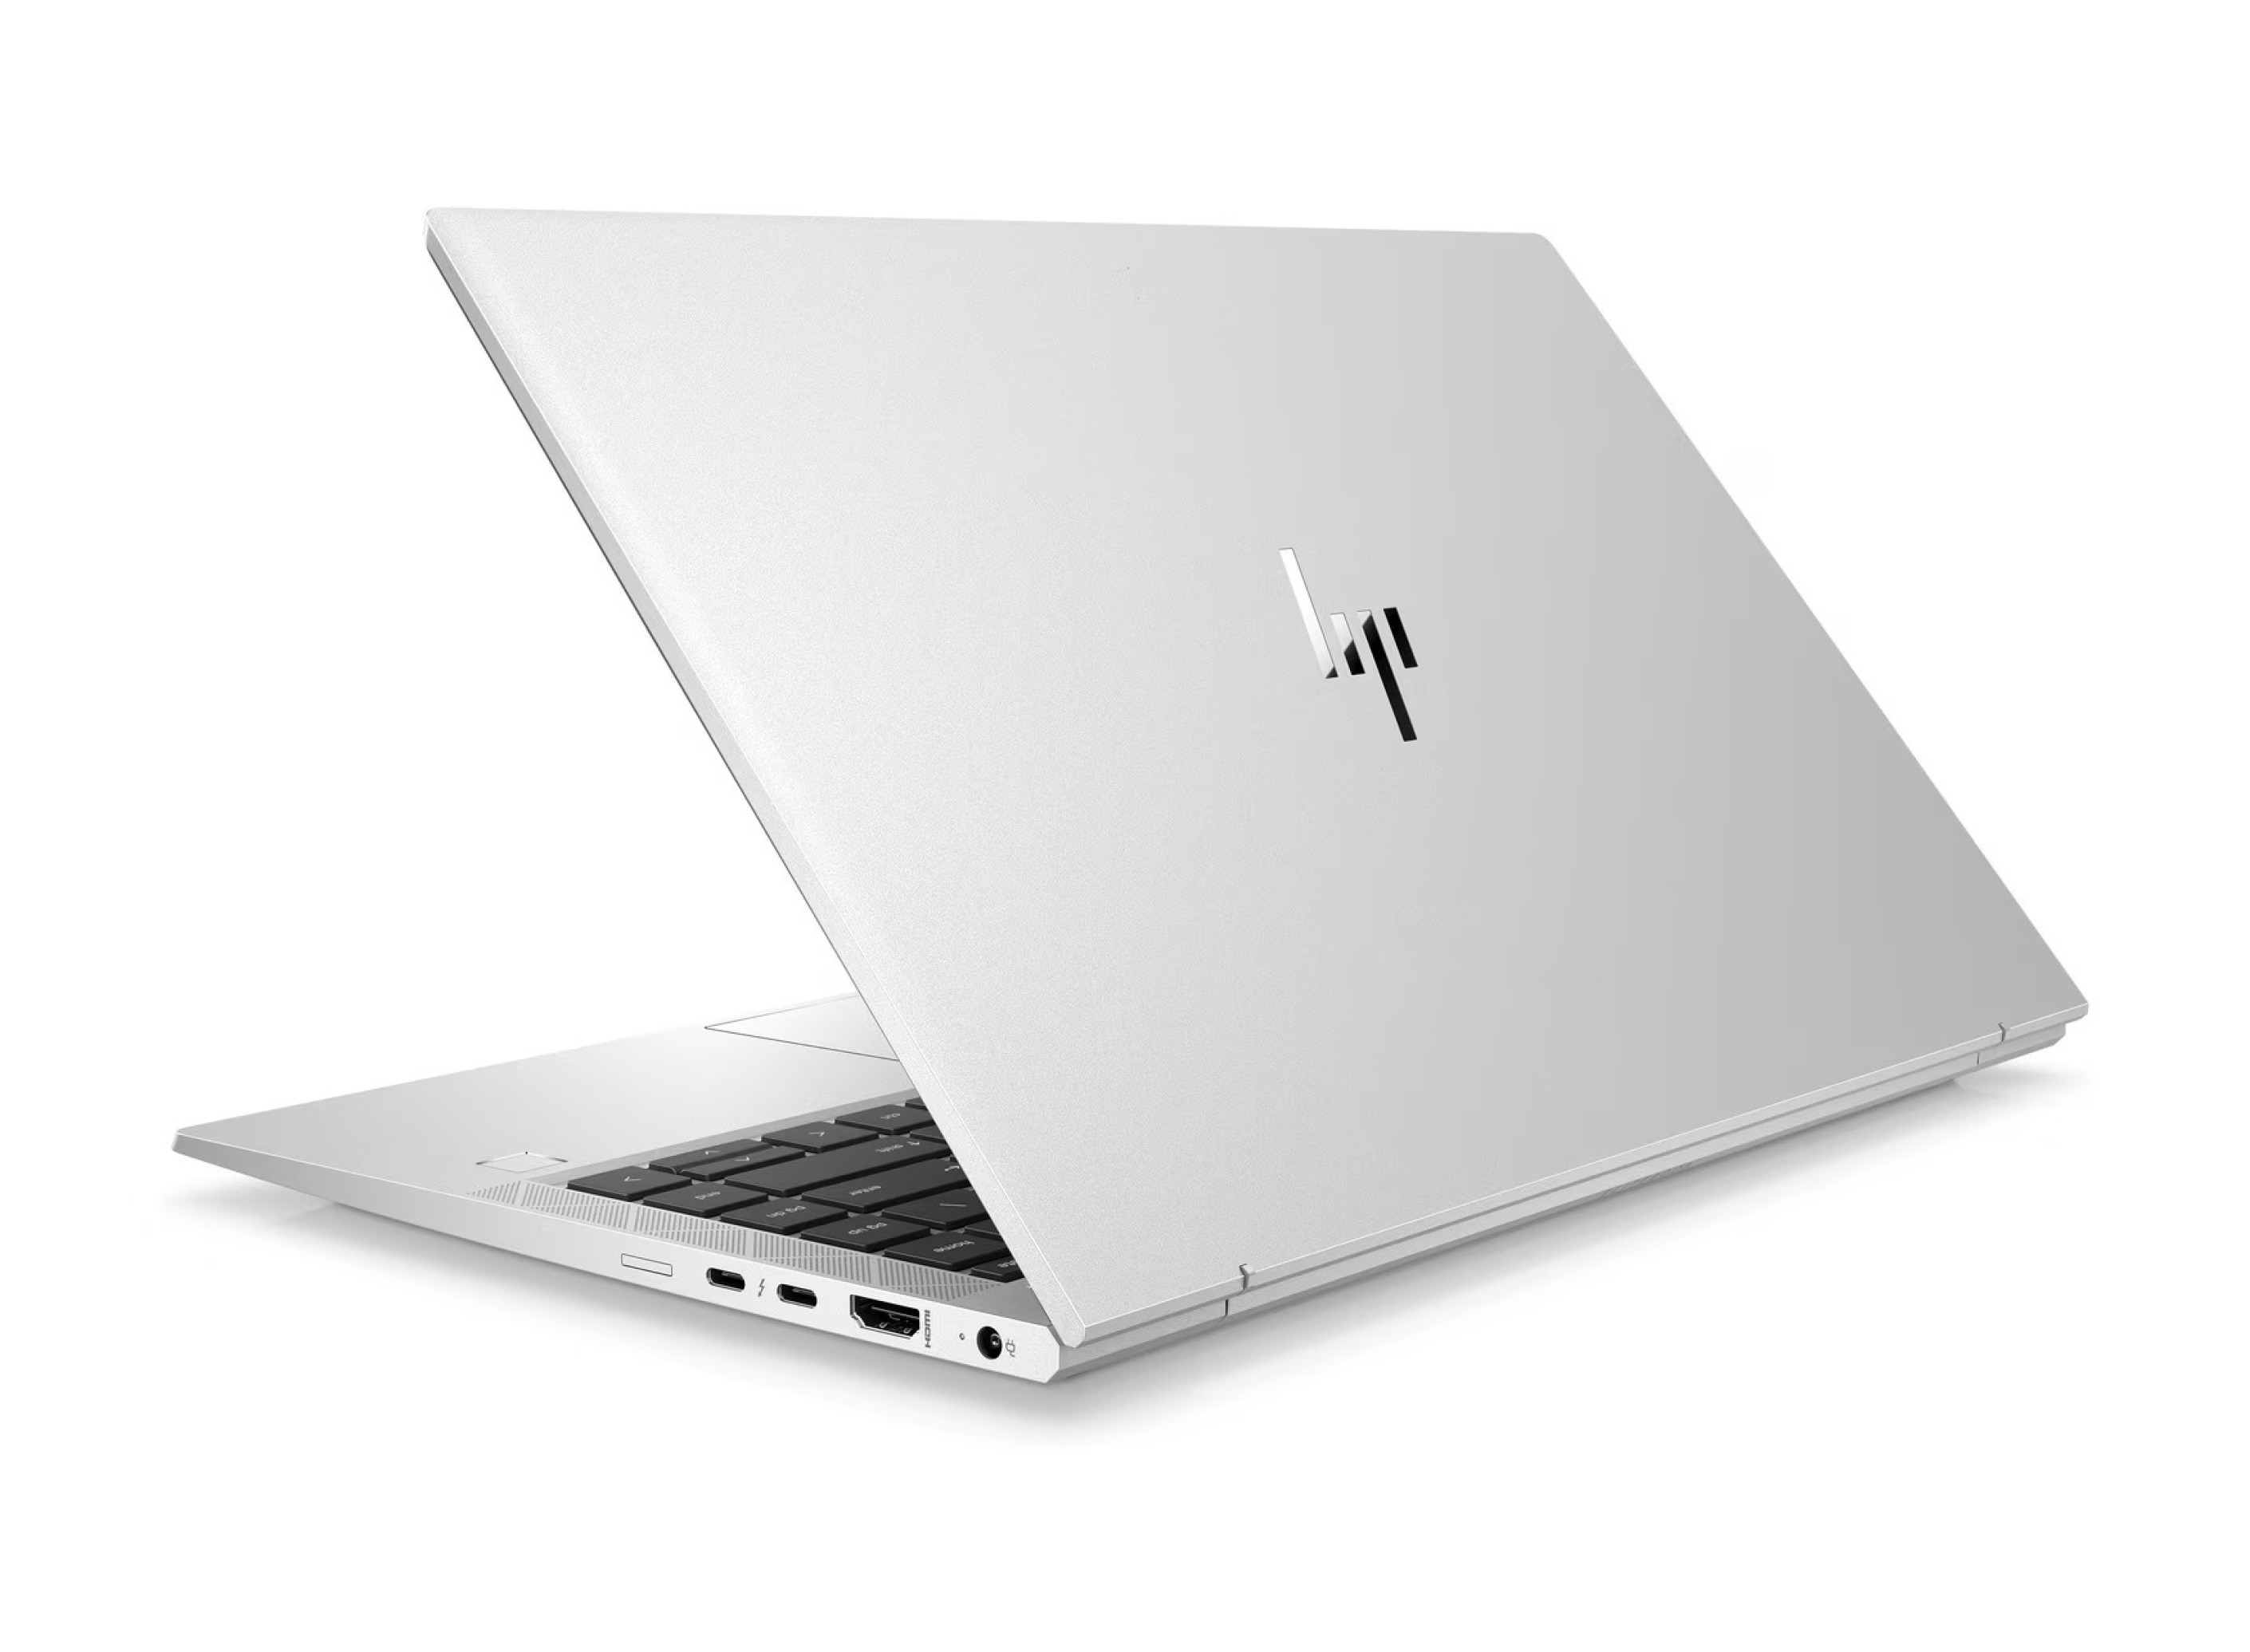  خرید،قیمت و مشخصات فنی لپ تاپ HP EliteBook 840 Aero G8 | لاکچری لپ تاپ 